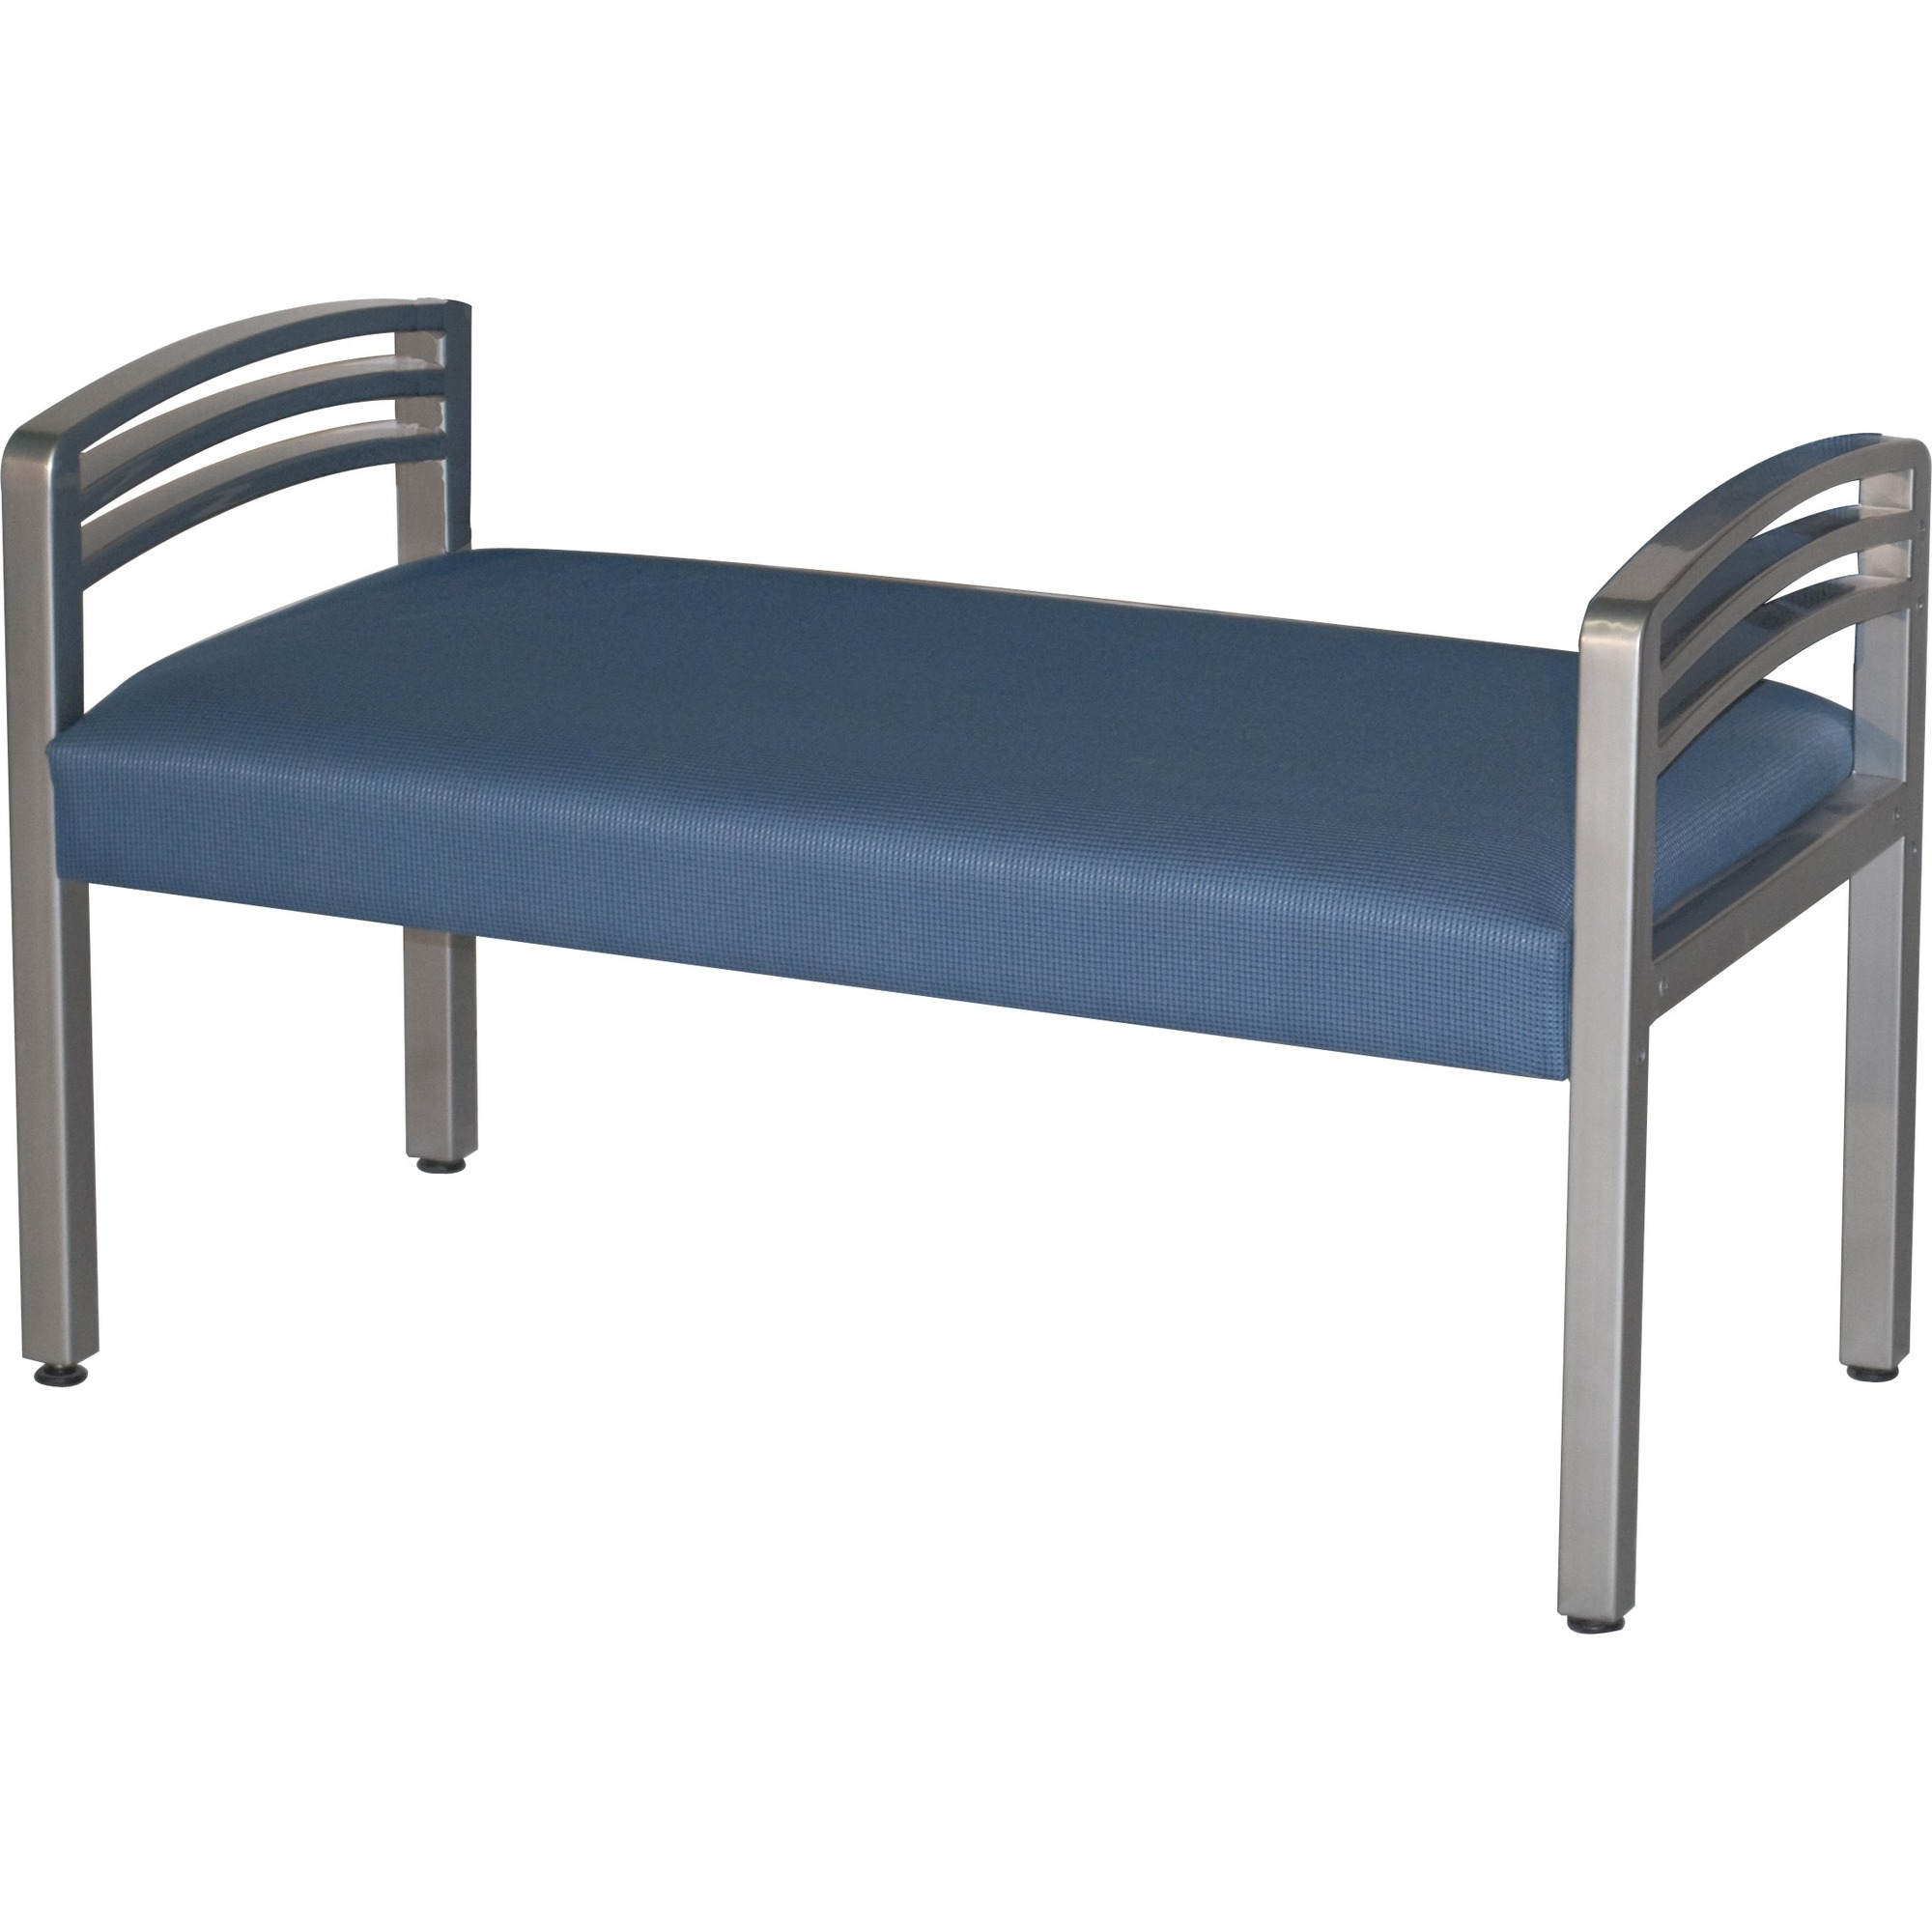 HPFI Trados 918MET Bench - Free Evening Polyester Seat - Metal, Steel Frame - Four-legged Base - Silver Reflectra Metallic - 45